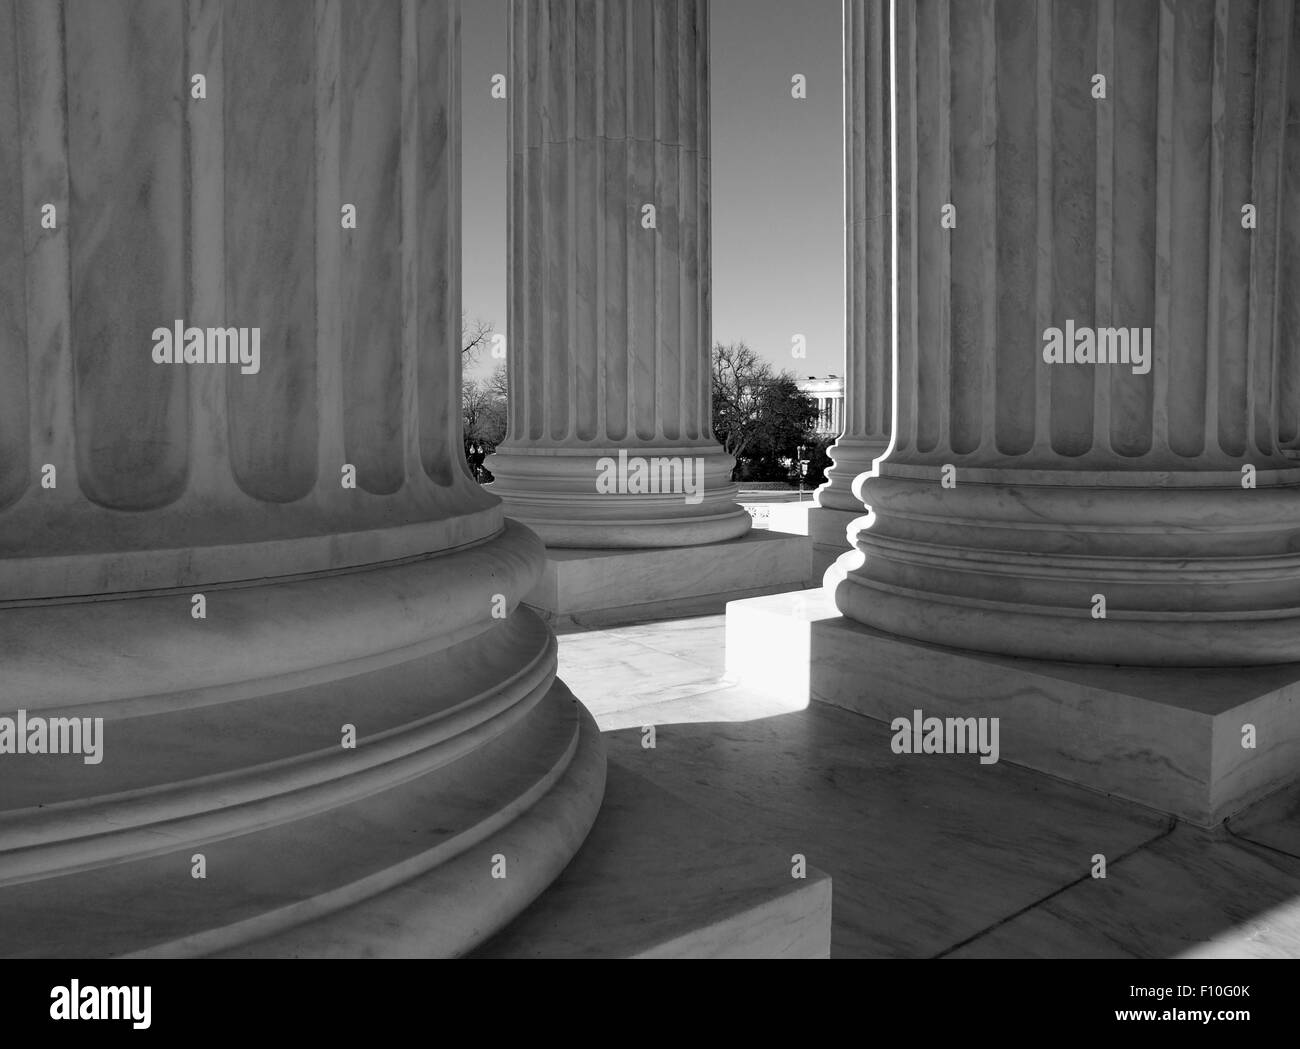 United States Supreme Court Spalten in schwarz und weiß. Stockfoto